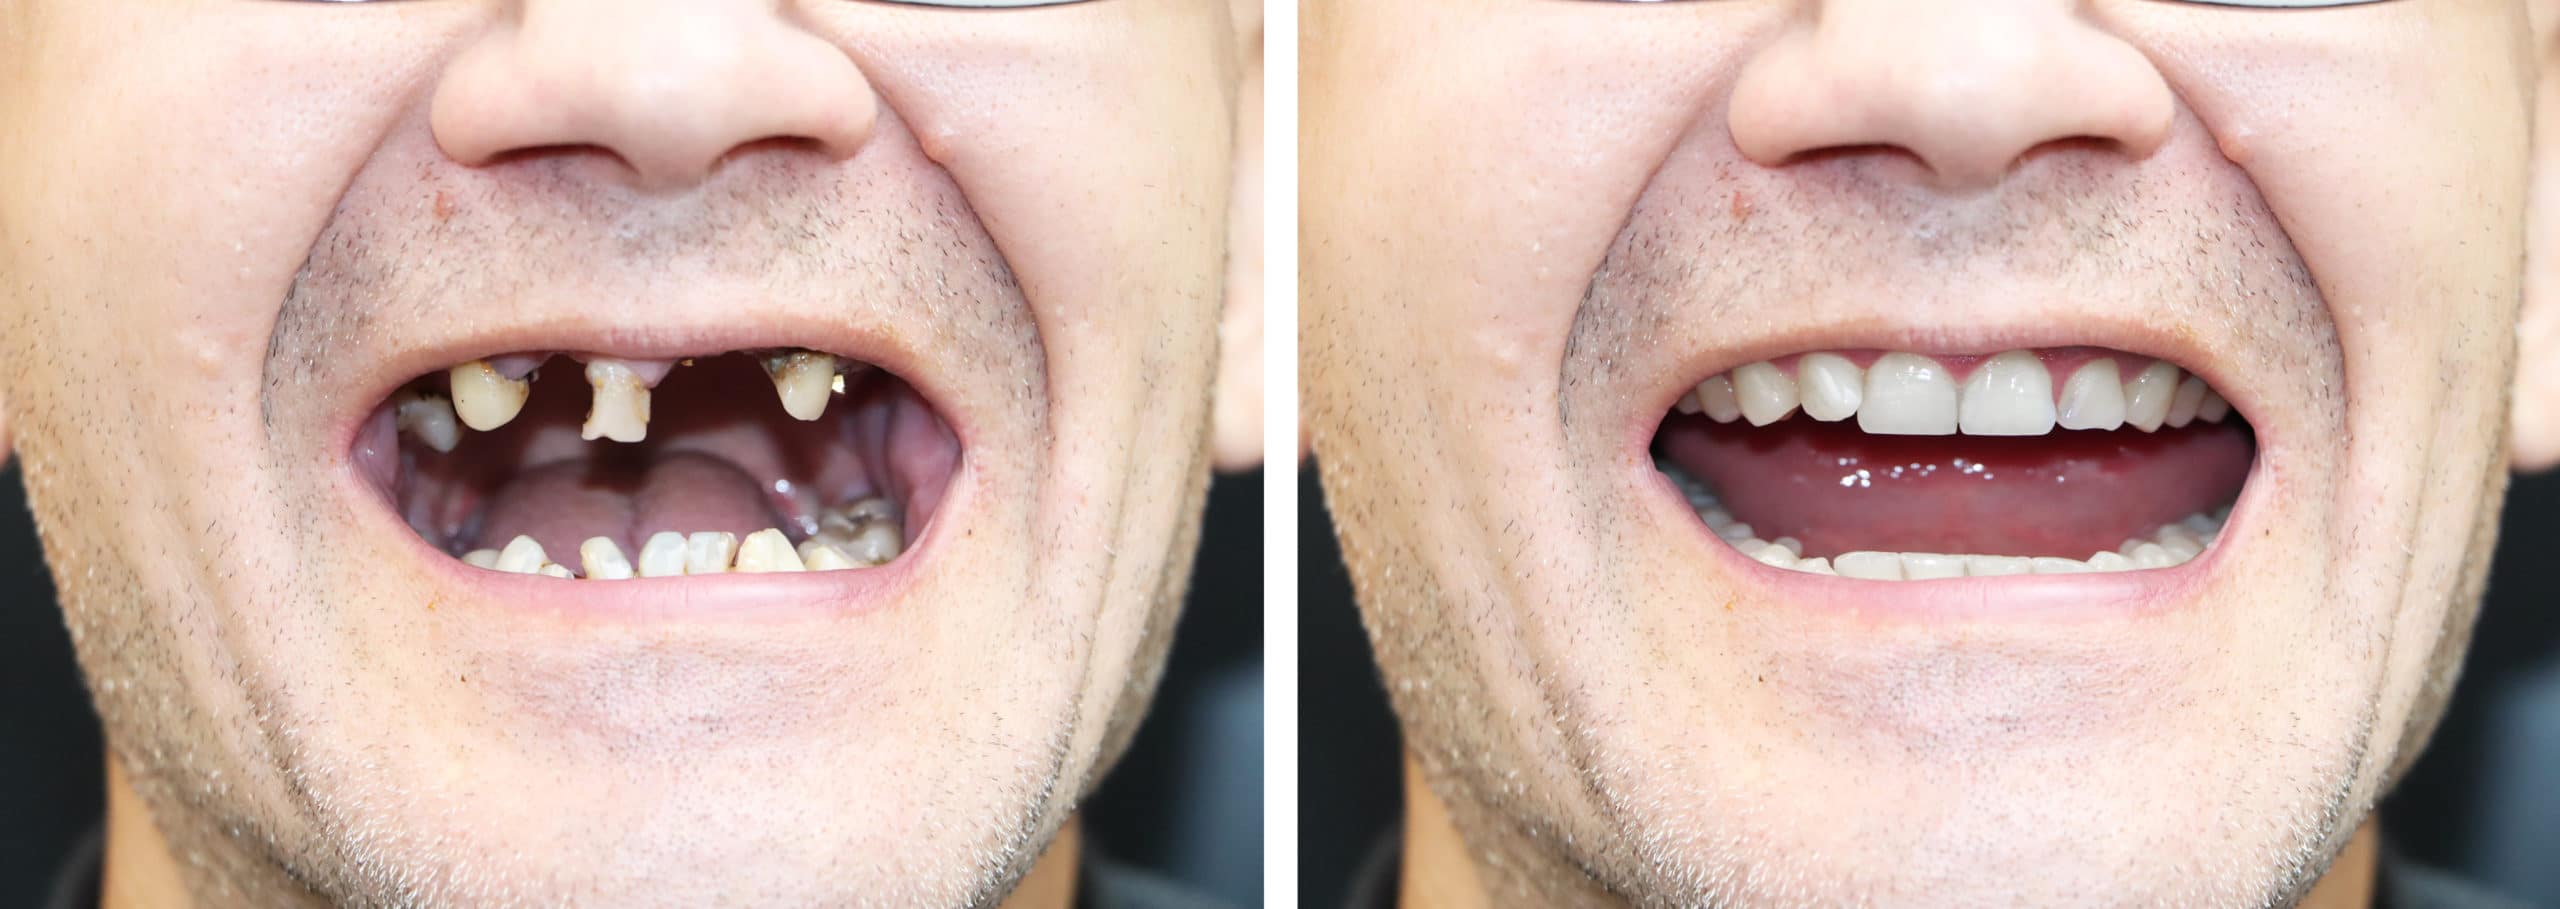 آماده سازی برای قرار دادن دندان مصنوعی بعد از کشیدن دندان